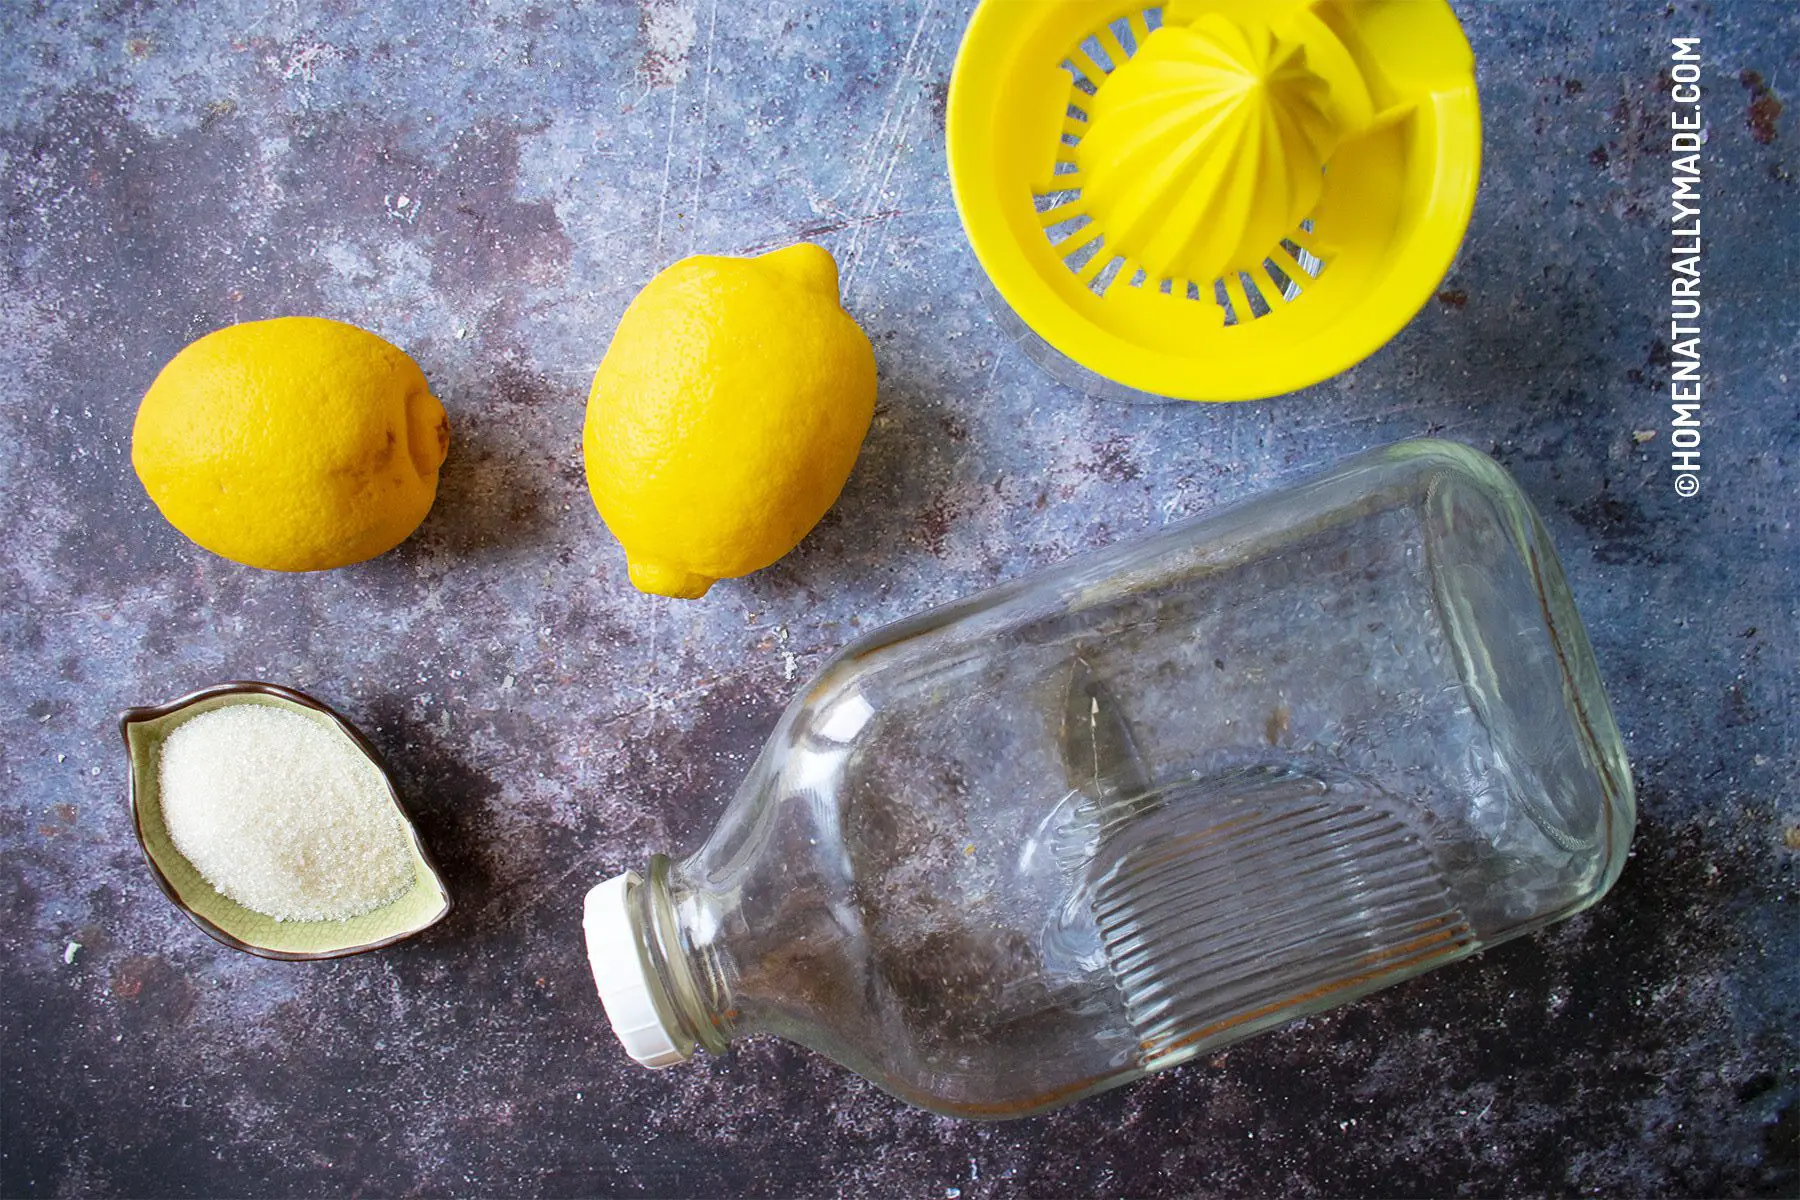 homemade lemonade ingredients